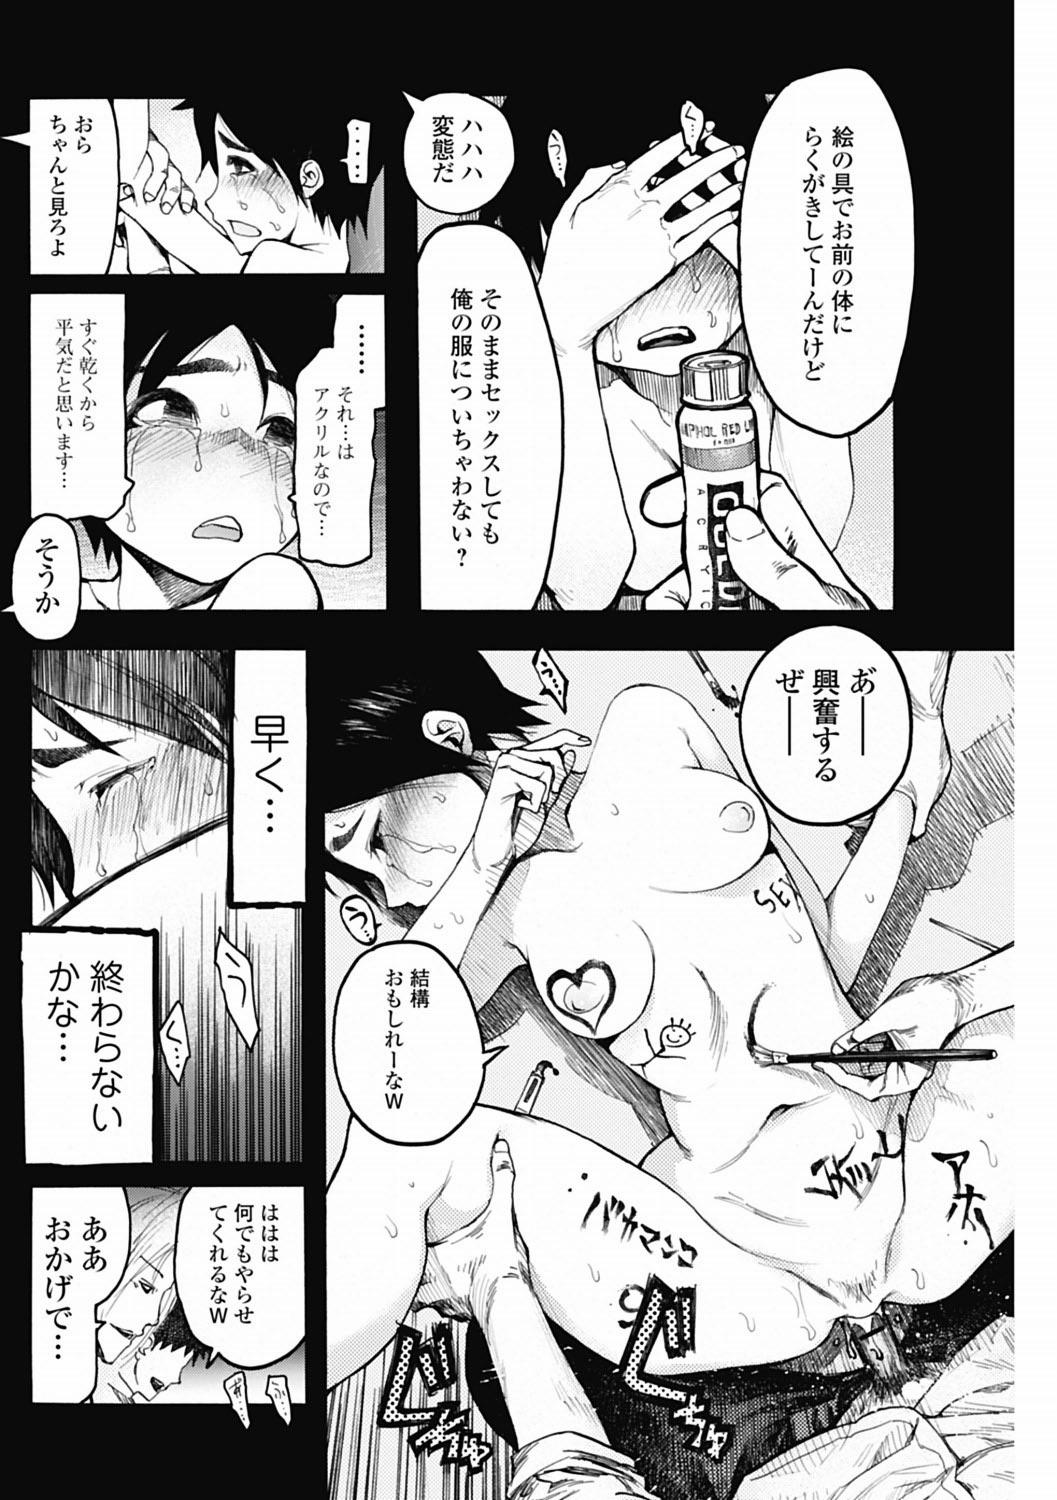 Bishoujo Kakumei KIWAME 2012-04 Vol.19 121